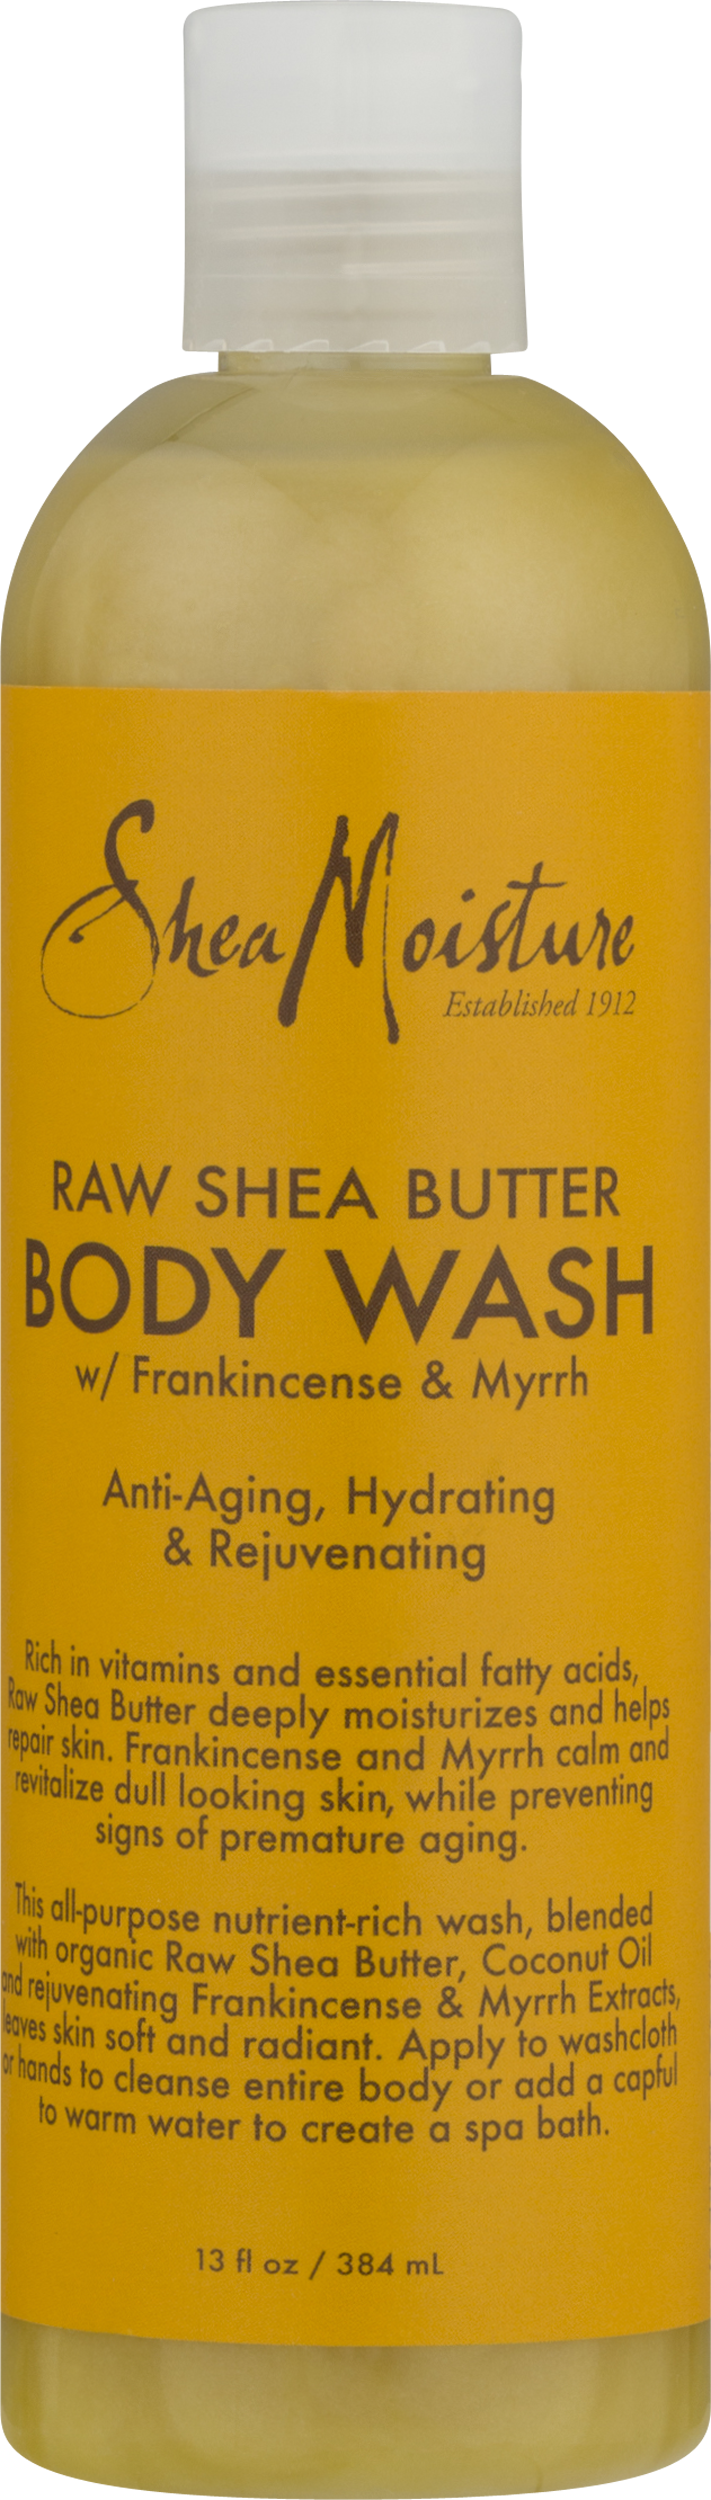 Shea Moisture Raw Shea Butter Body Wash, 13 oz